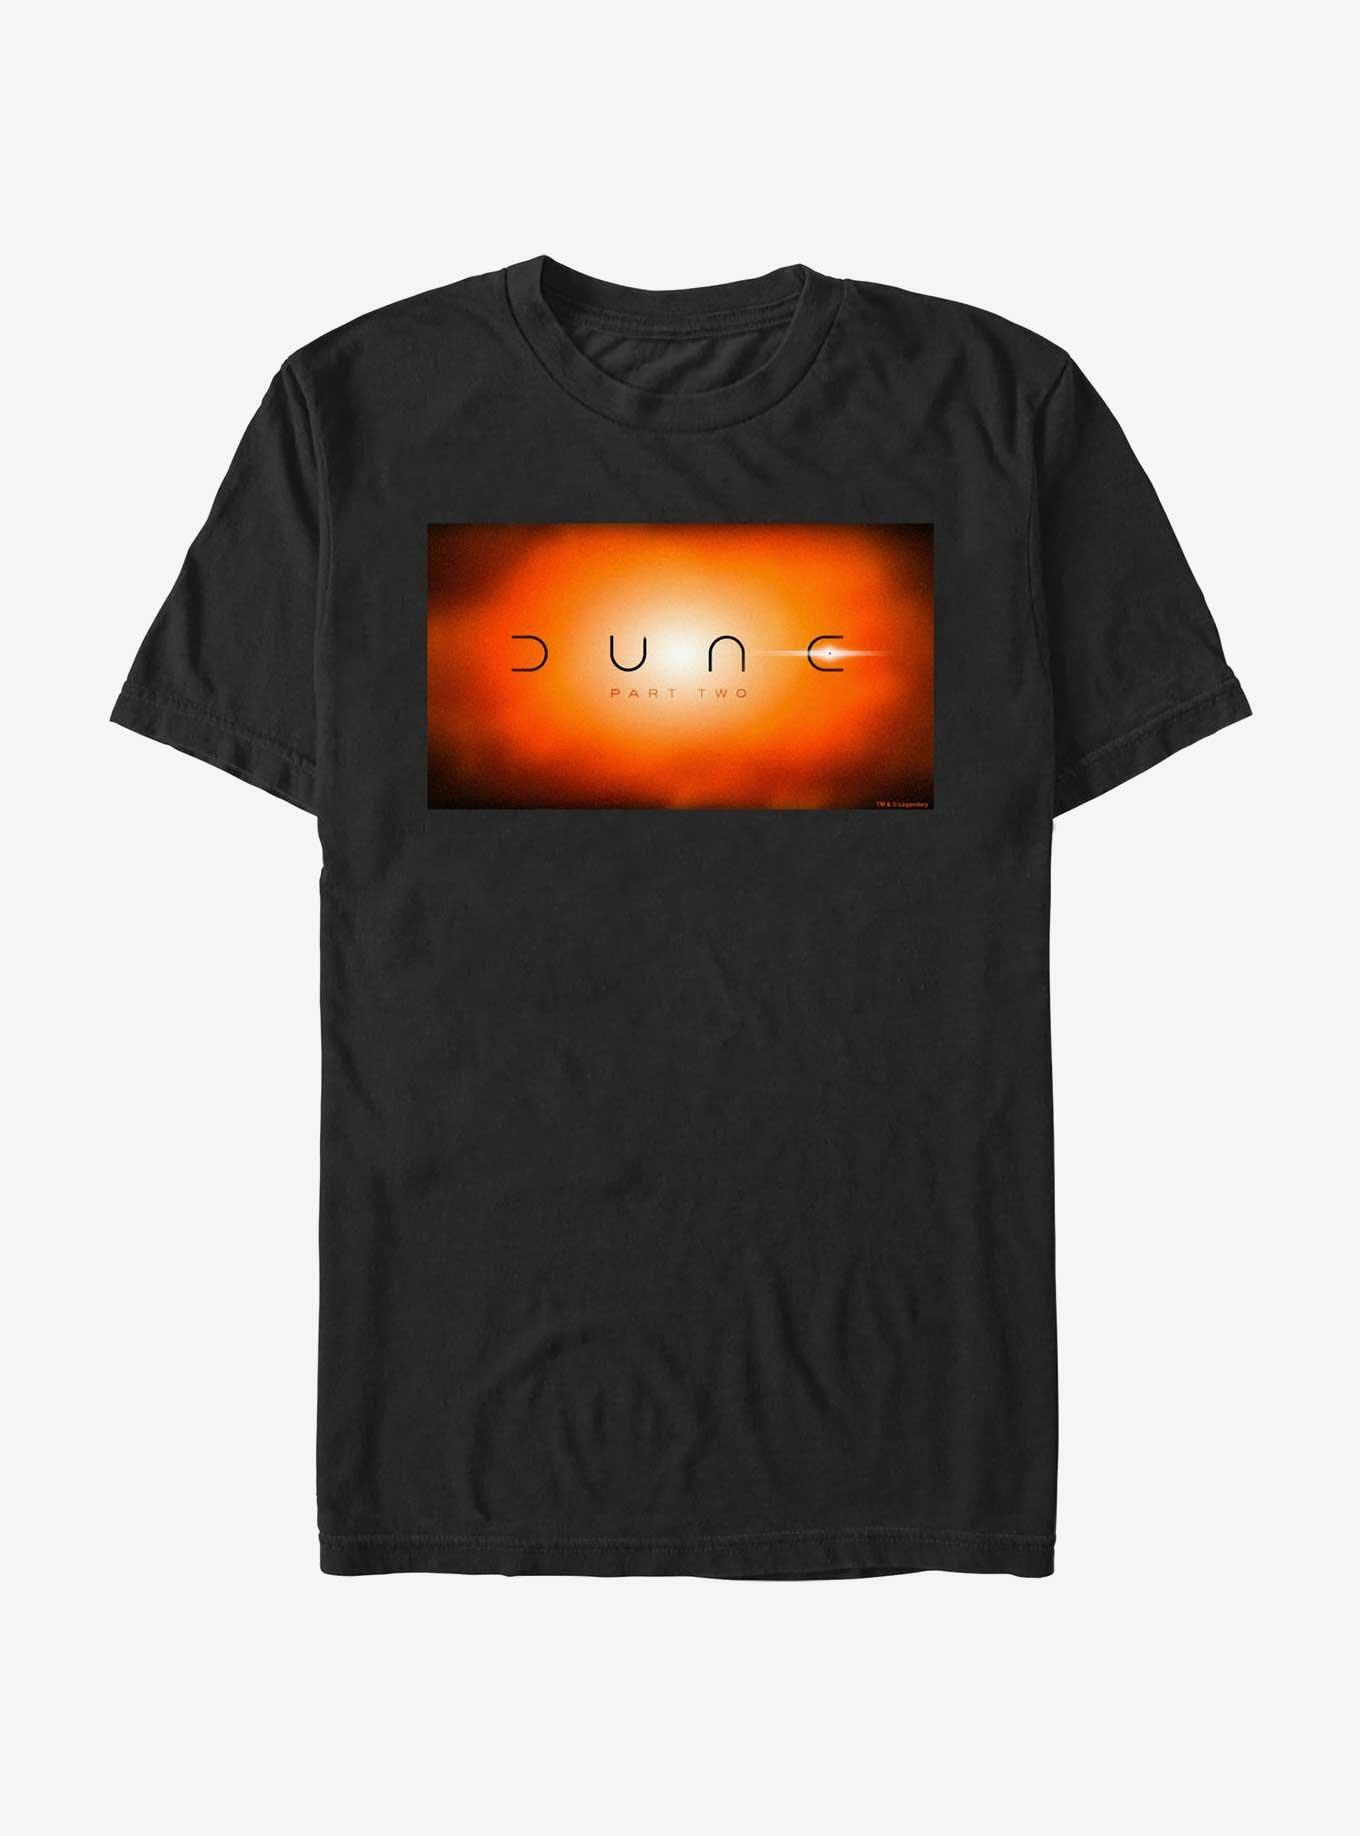 Dune: Part Two Eclipse T-Shirt, BLACK, hi-res